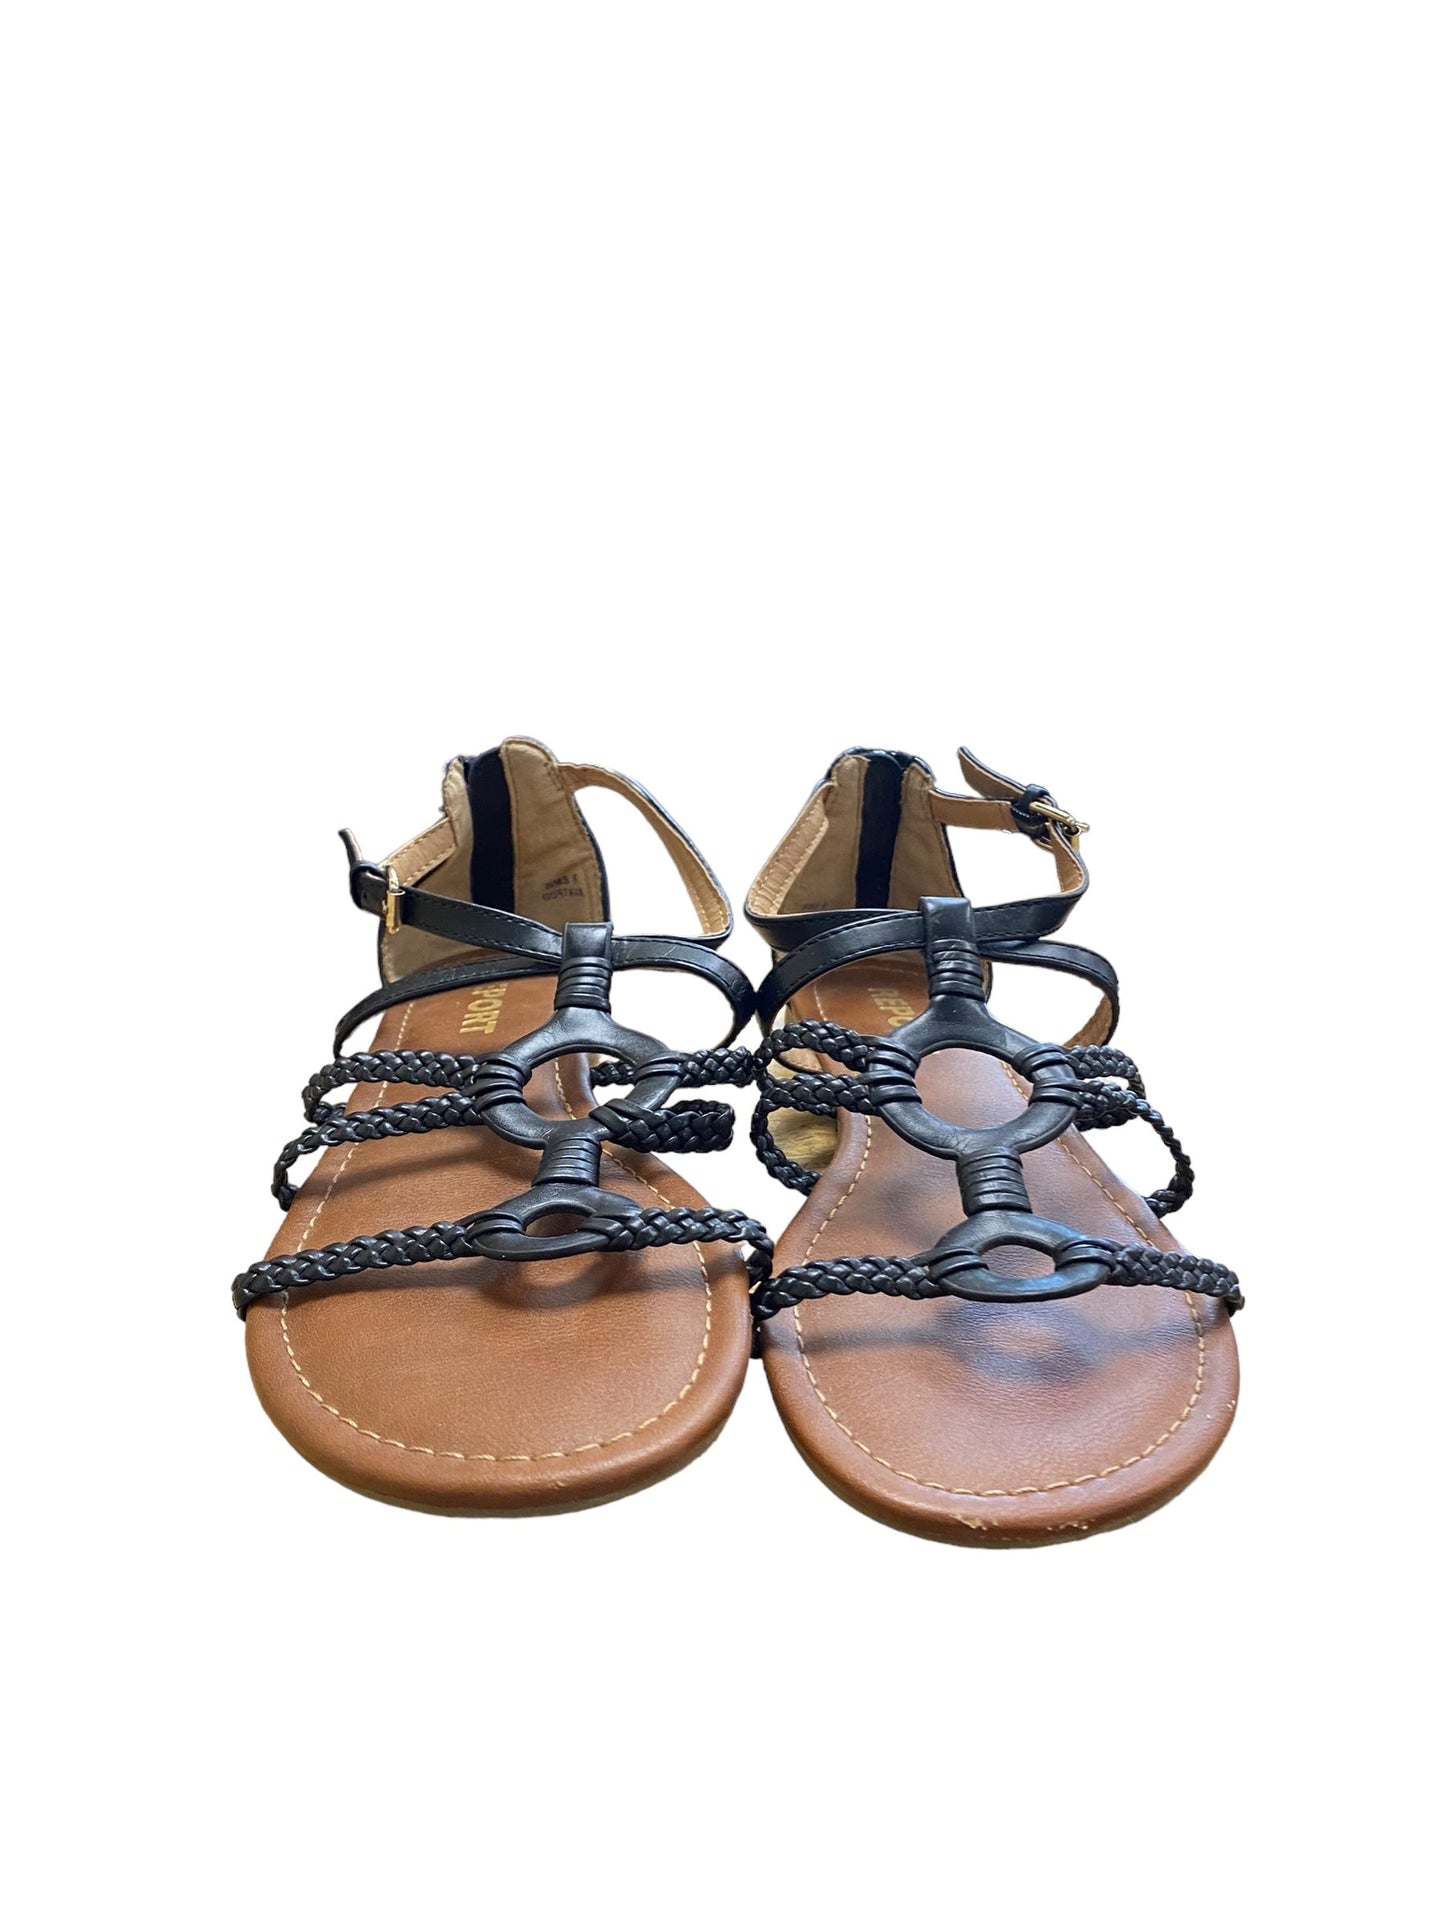 Black Sandals Flats Report, Size 8